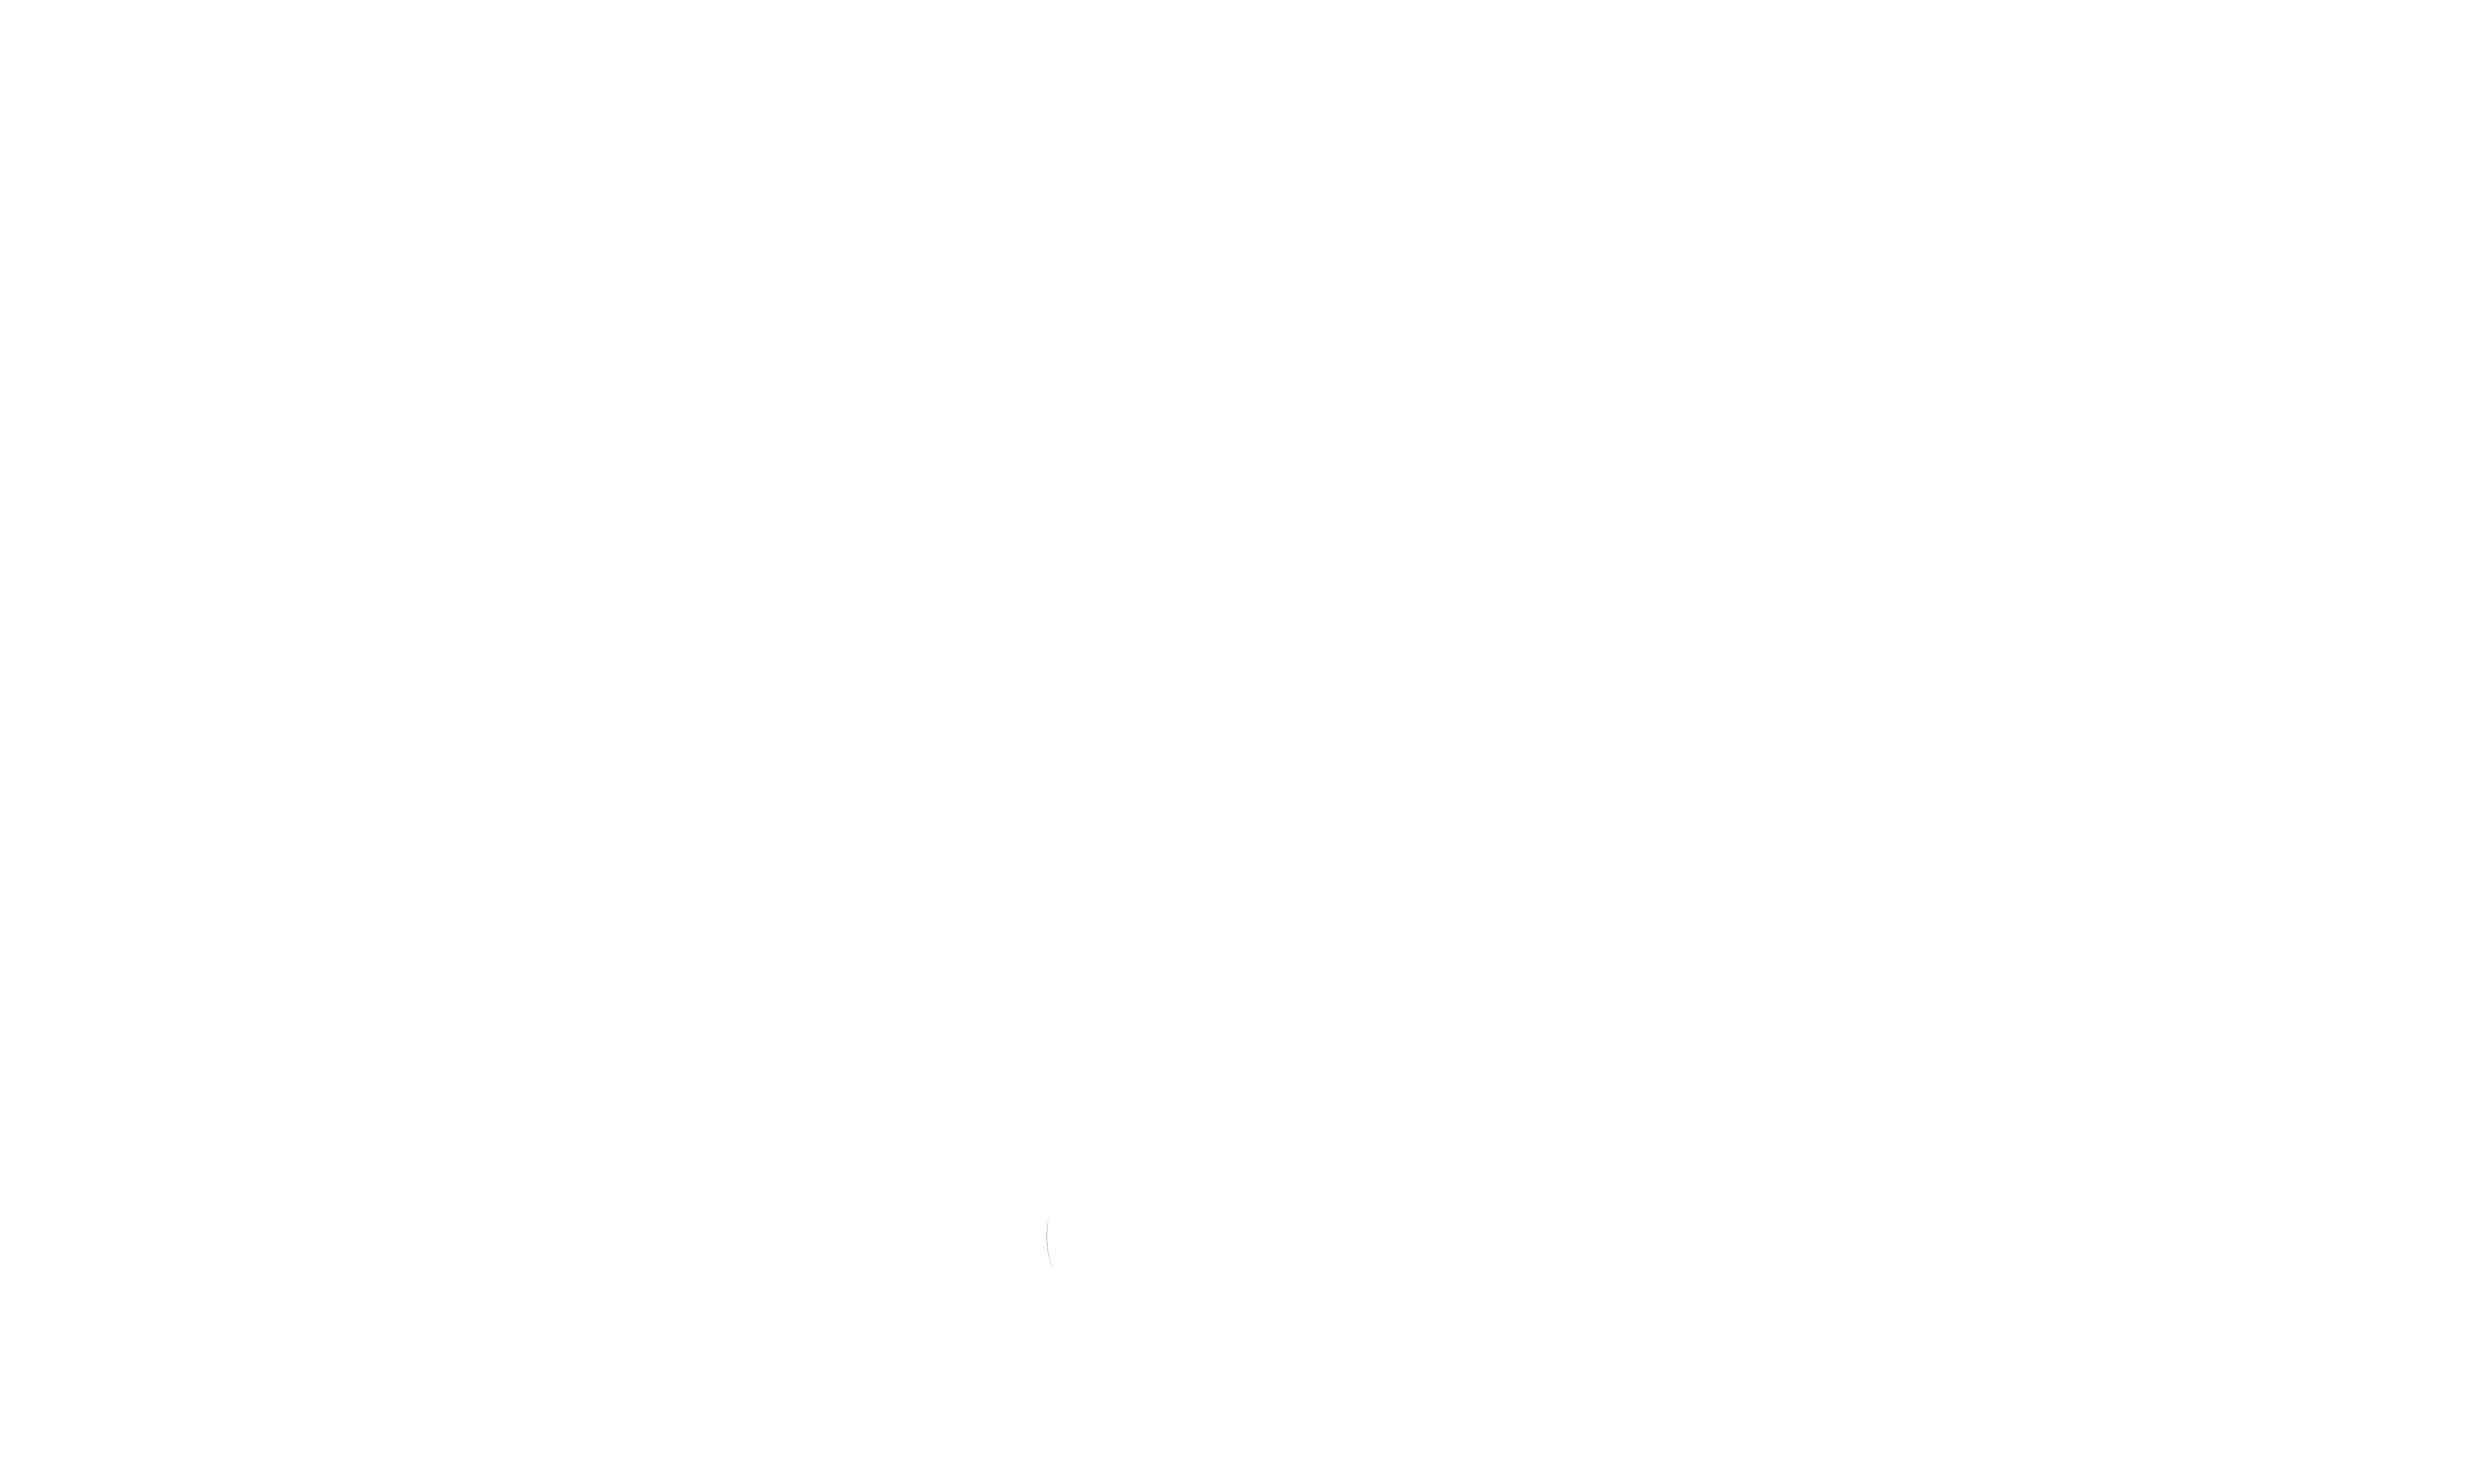 Logo Sellerie du Phare